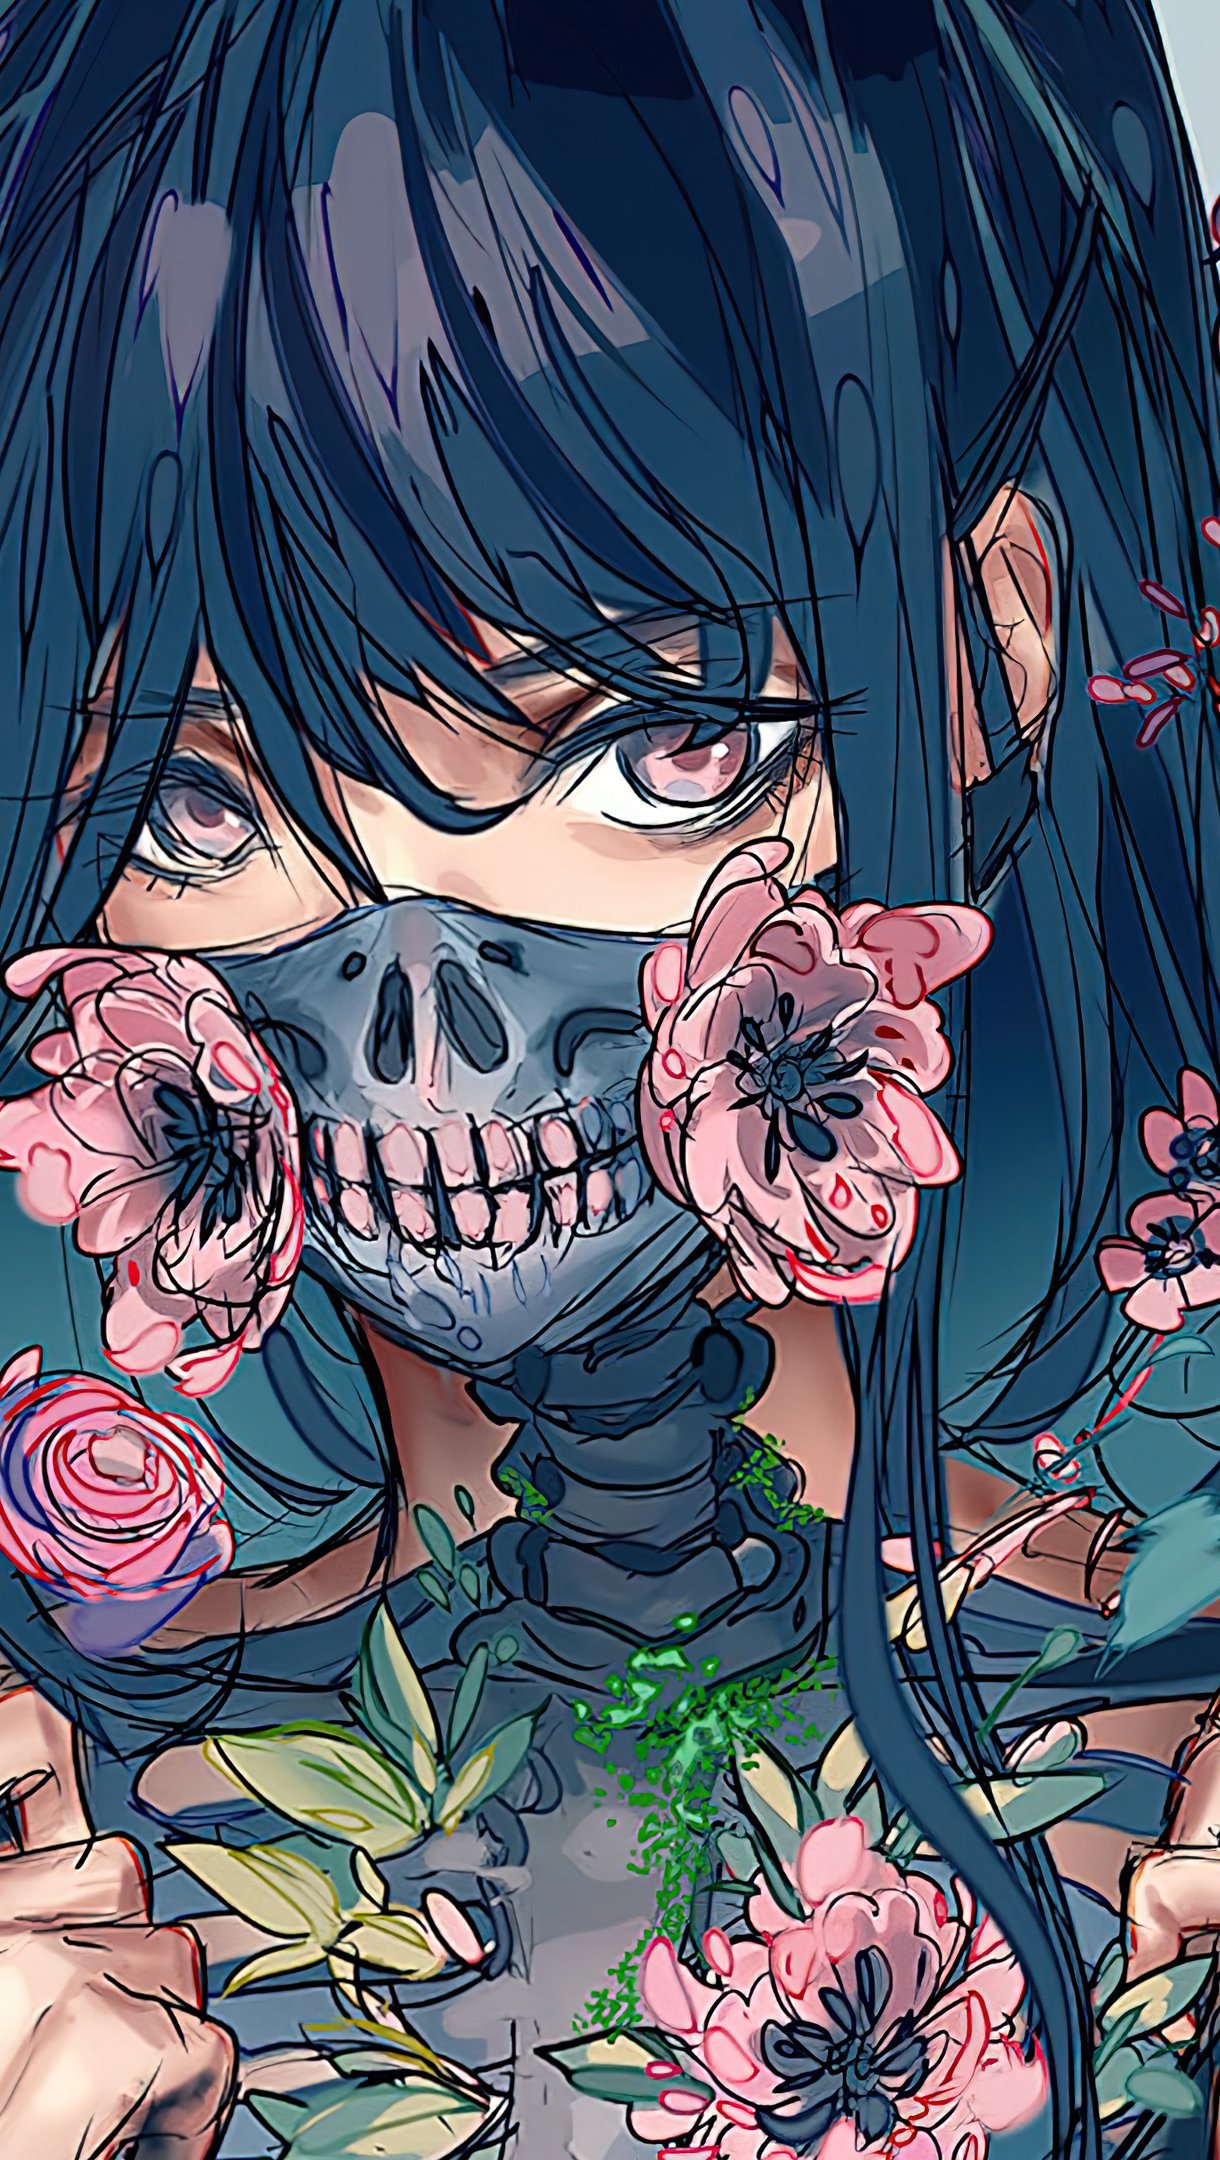 Fondos de pantalla Chica anime con mascara y flores Vertical